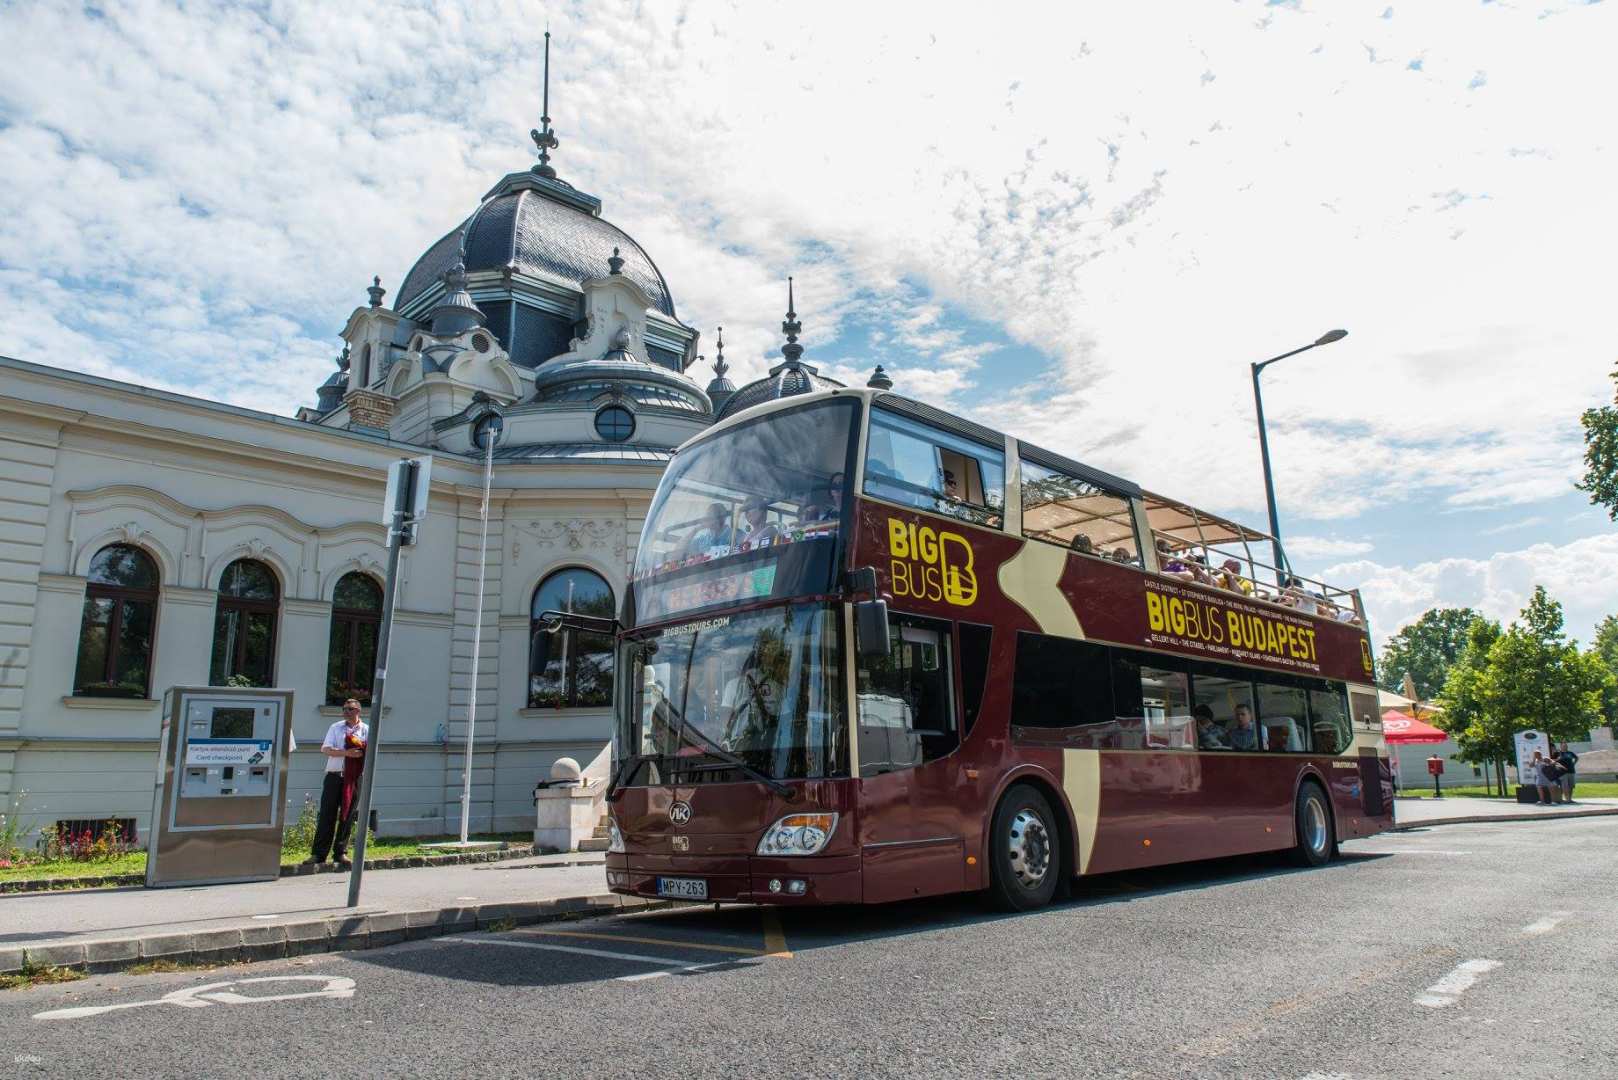 匈牙利-布達佩斯 Big Bus Tour 雙層觀光巴士自由行